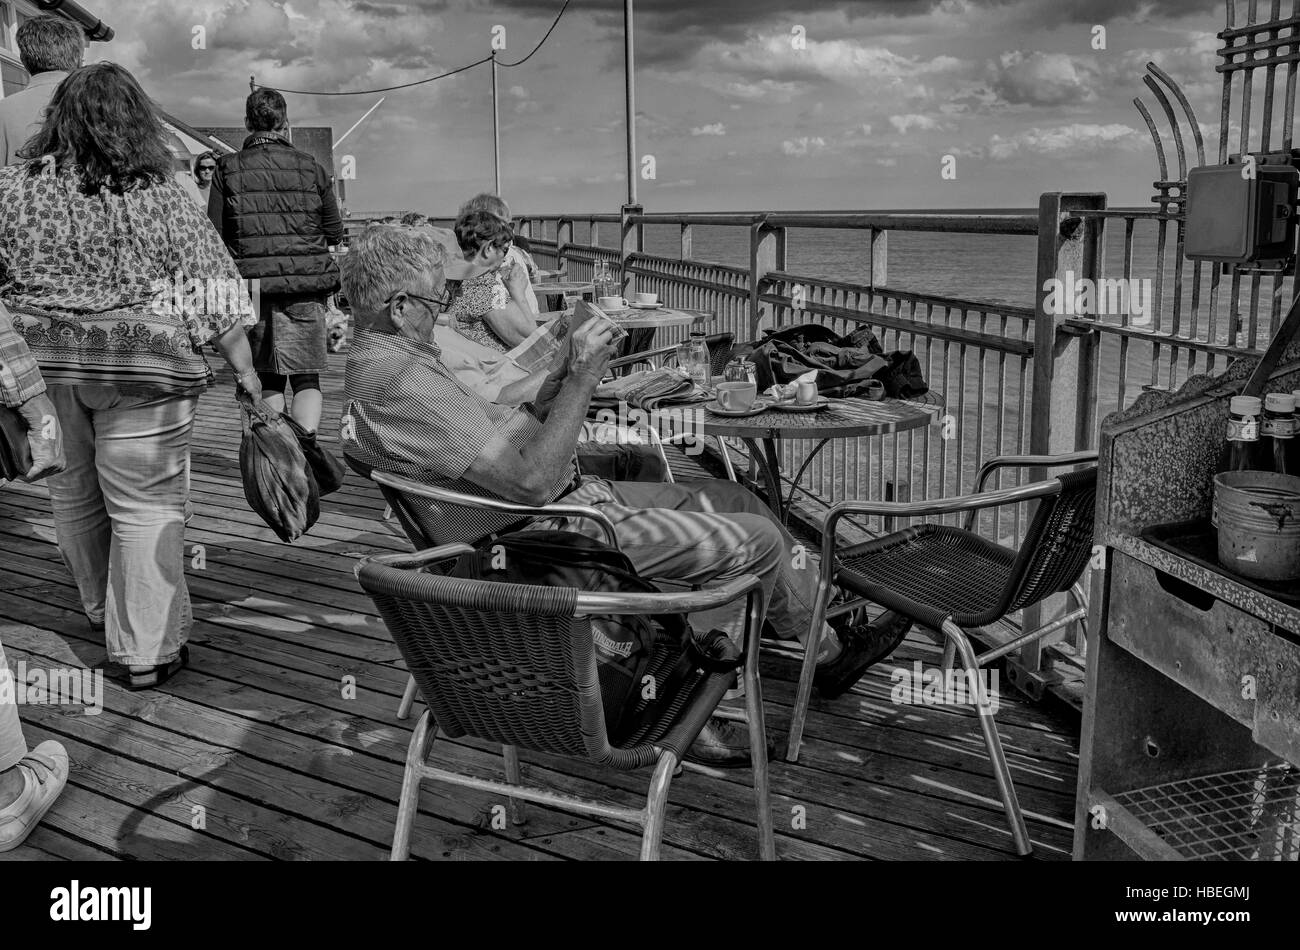 Southwold, England. Ältere Menschen genießen das sonnige Wetter entlang Southwold pier Tee trinken und Zeitung lesen. Die jüngeren Besucher sind zu Fuß durch. Foto umgewandelt, HDR, High Dynamic Range, für ein dramatischer kontrastreiches Bild. Stockfoto